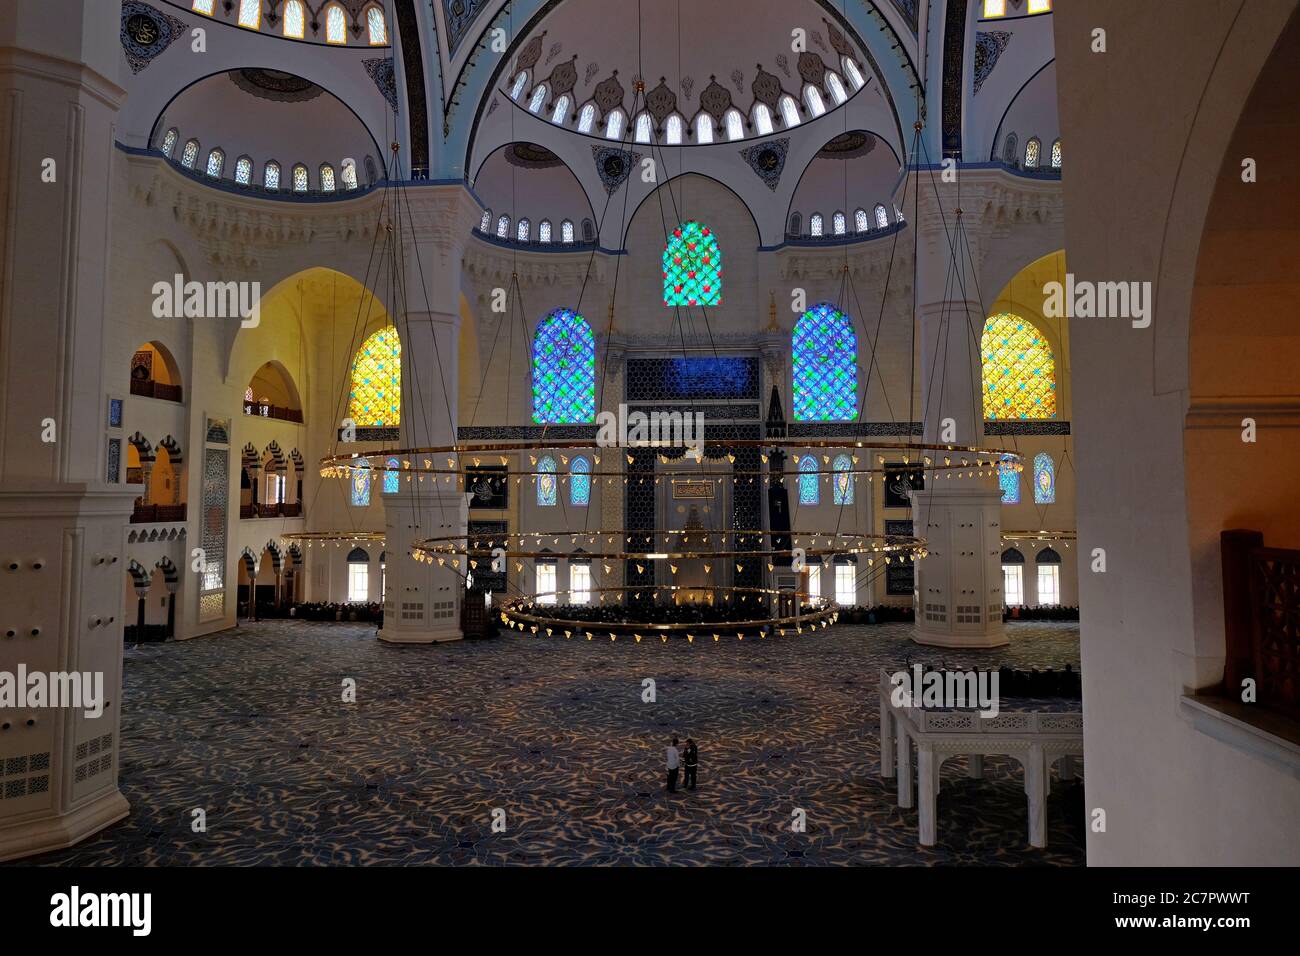 La luce splende attraverso le squisite vetrate colorate sulla gloriosa sala principale di preghiera rivestita di moquette di Camlica Camii a Istanbul. Foto Stock